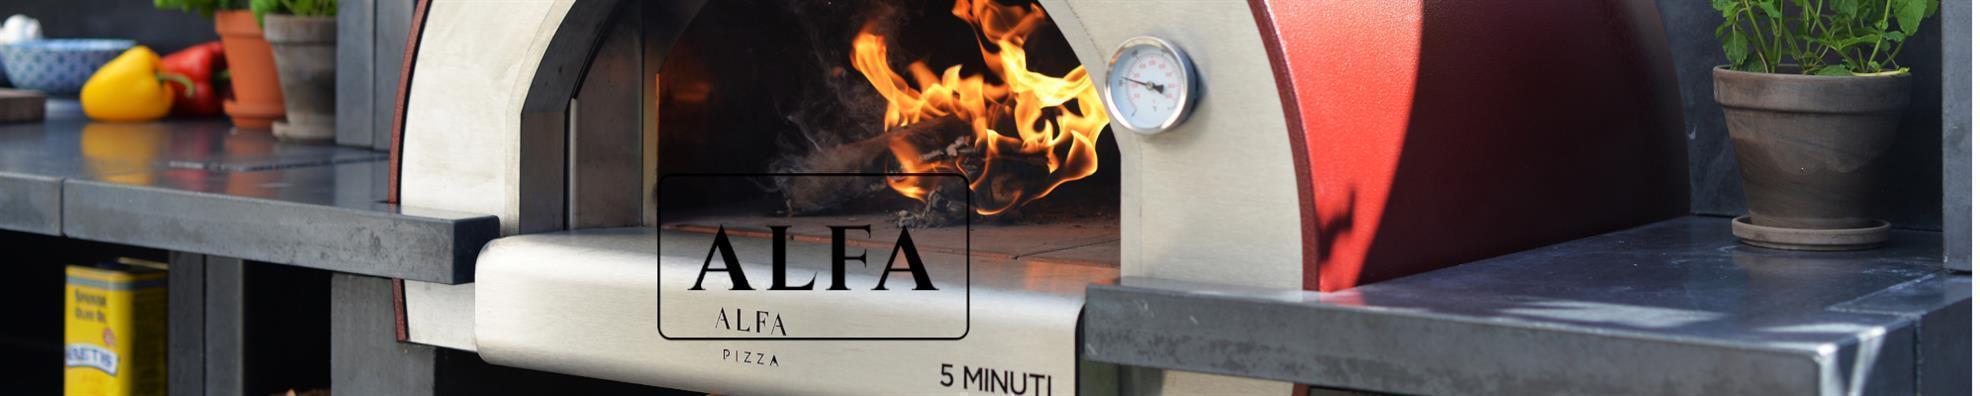 Alfa Forni - Pizzaiolo-Kit 120 cm